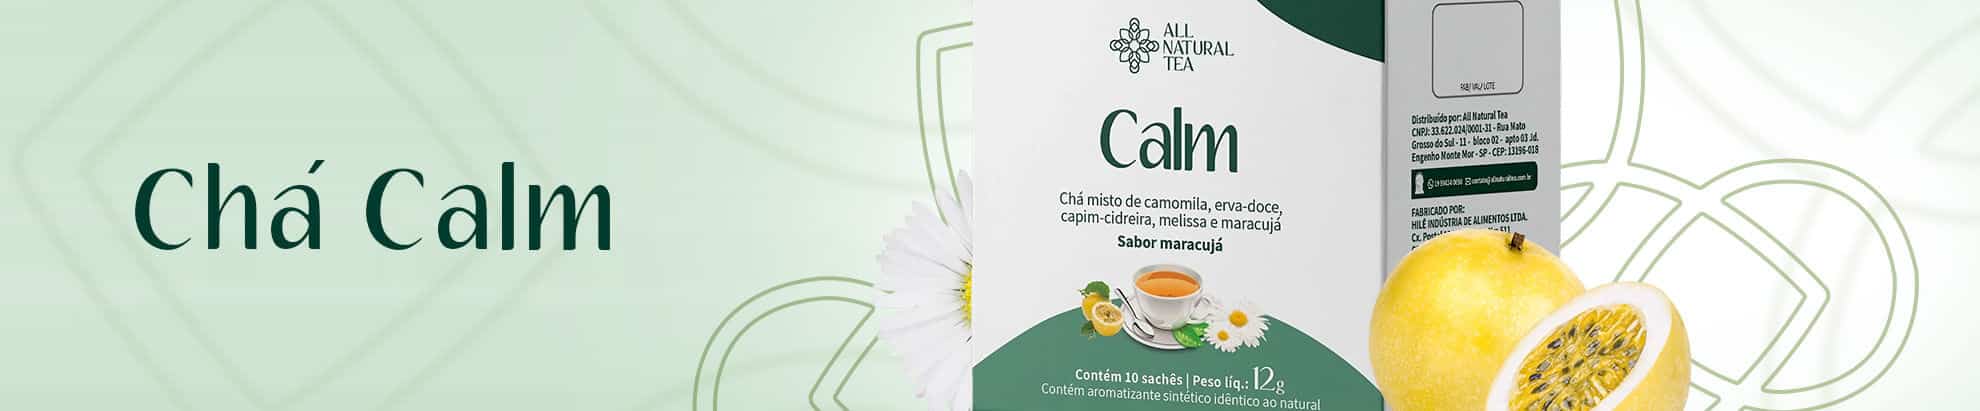 All Natural Tea - Chá Calm